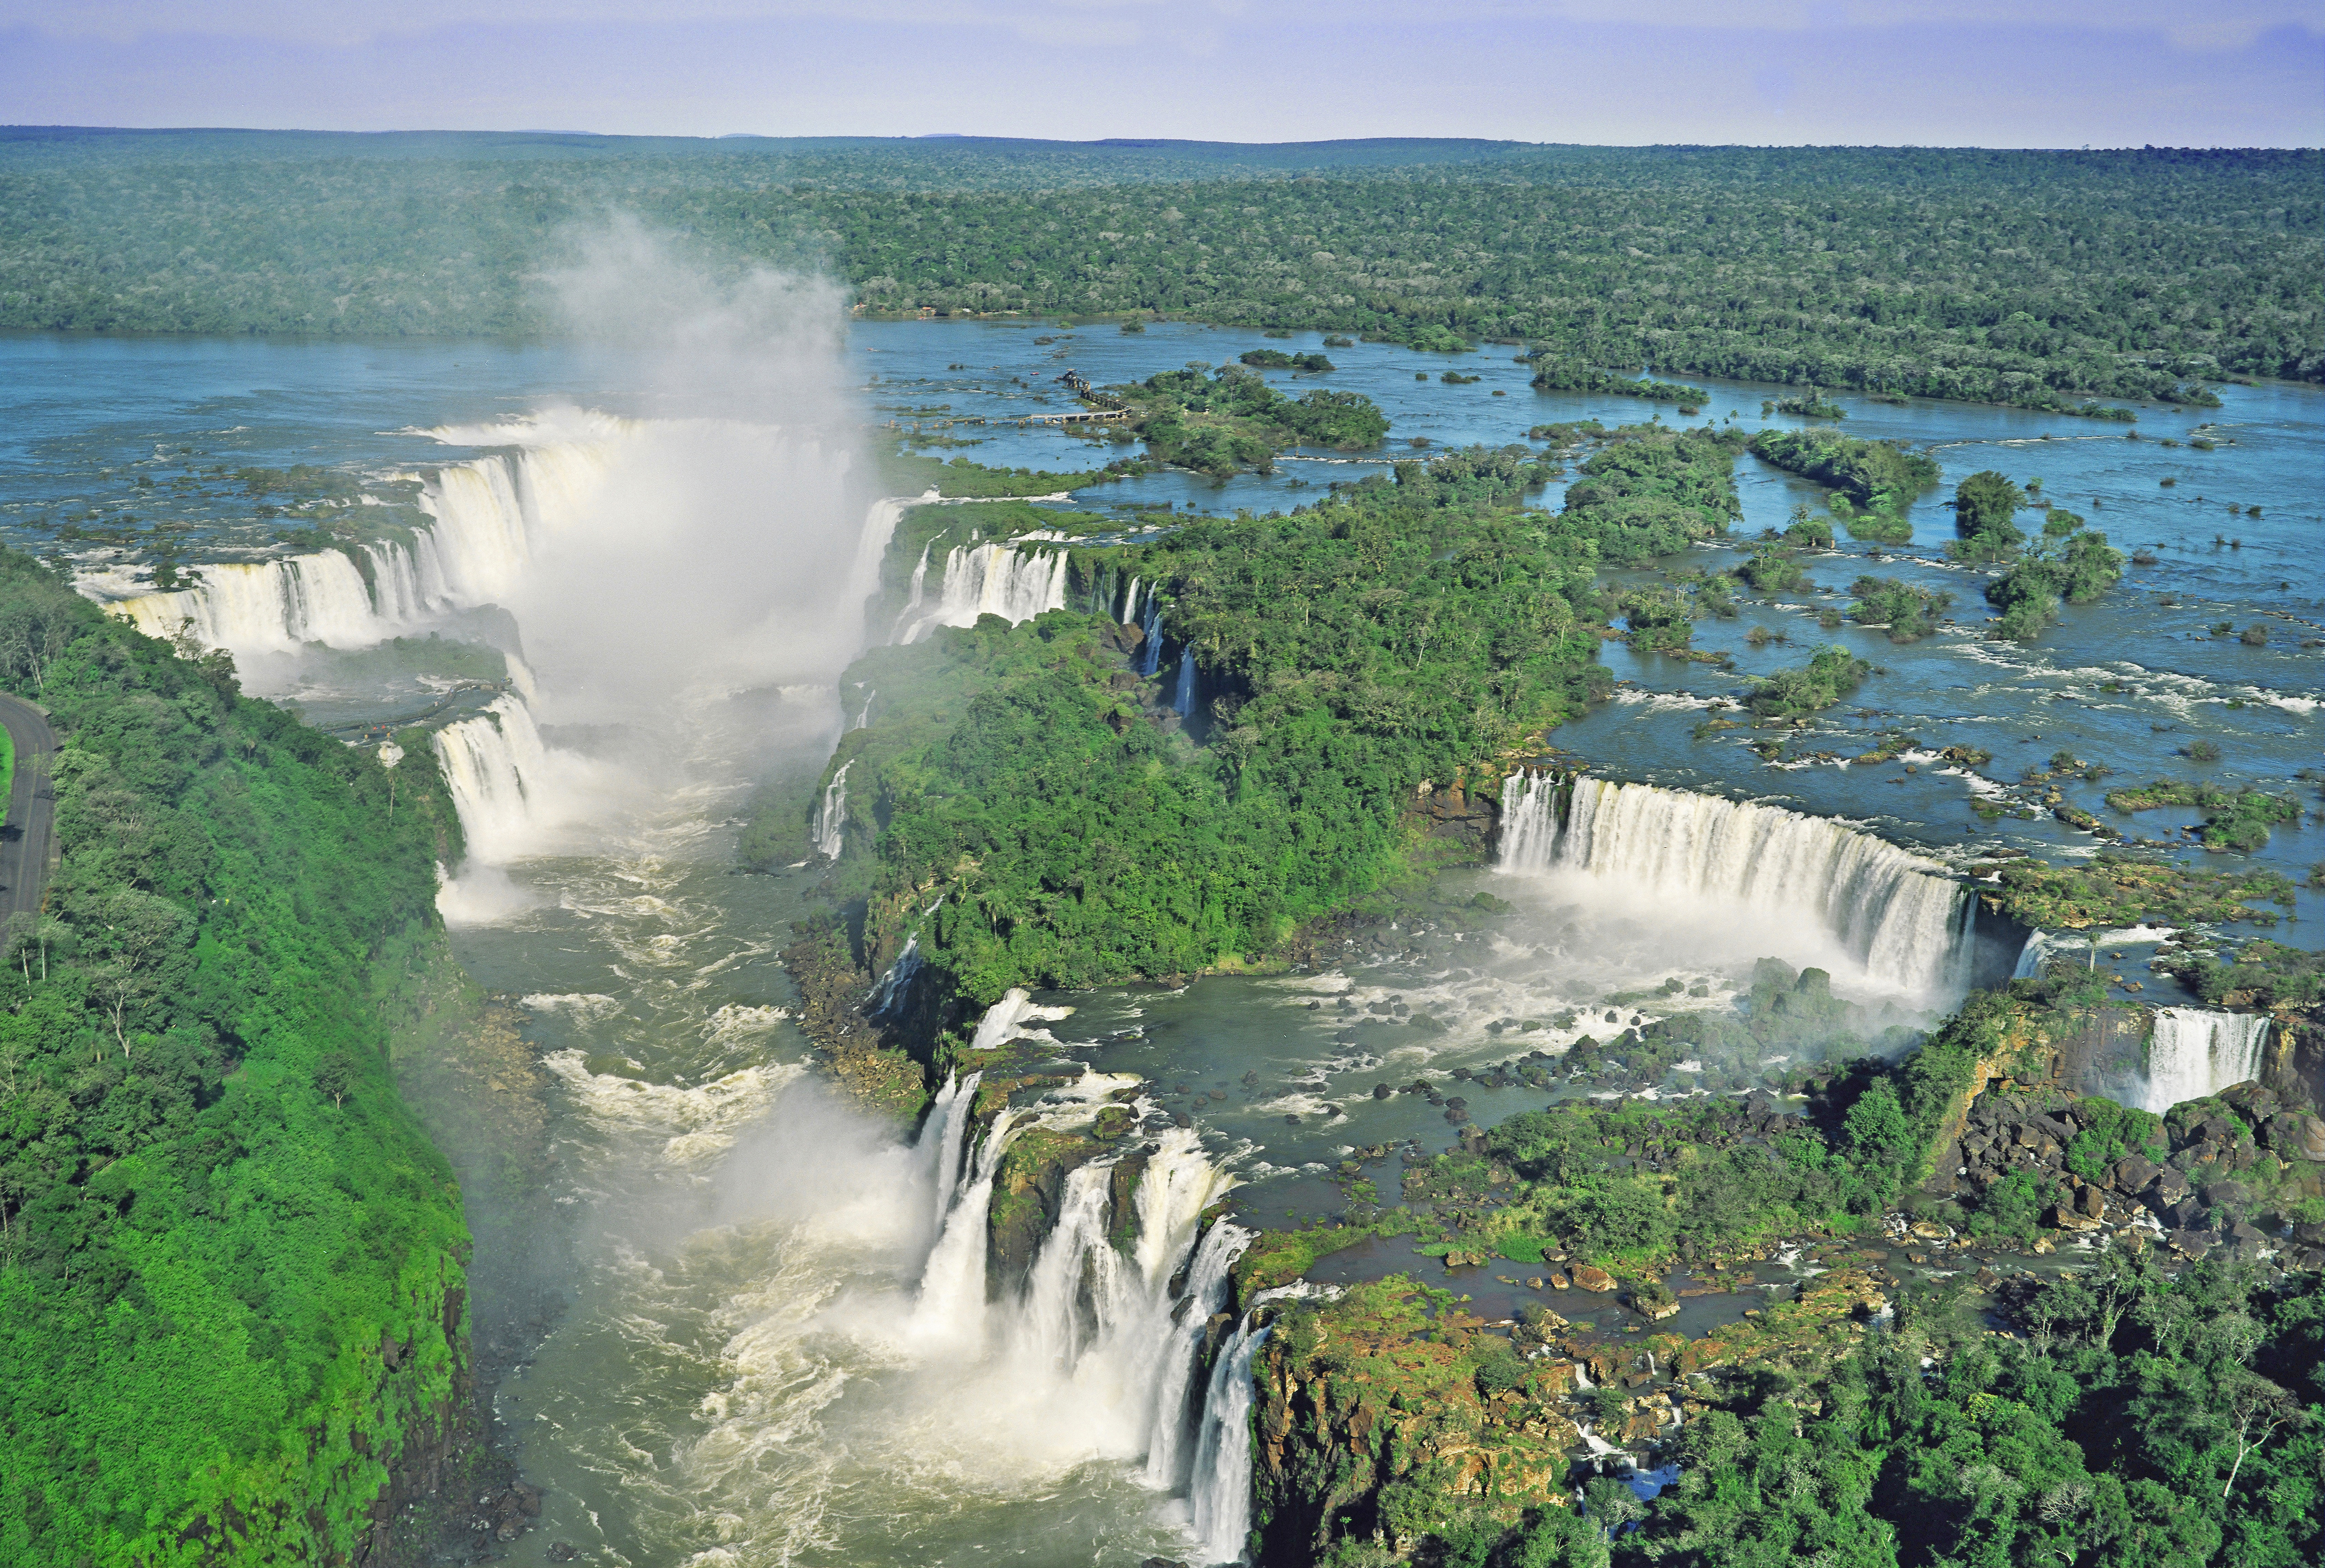 Страна водопадов. Игуасу (национальный парк, Аргентина). Бразилия водопады Игуасу. Игуасу, Аргентина / Игуасу, Бразилия. Национальный парк Игуасу, Бразилия / Аргентина.